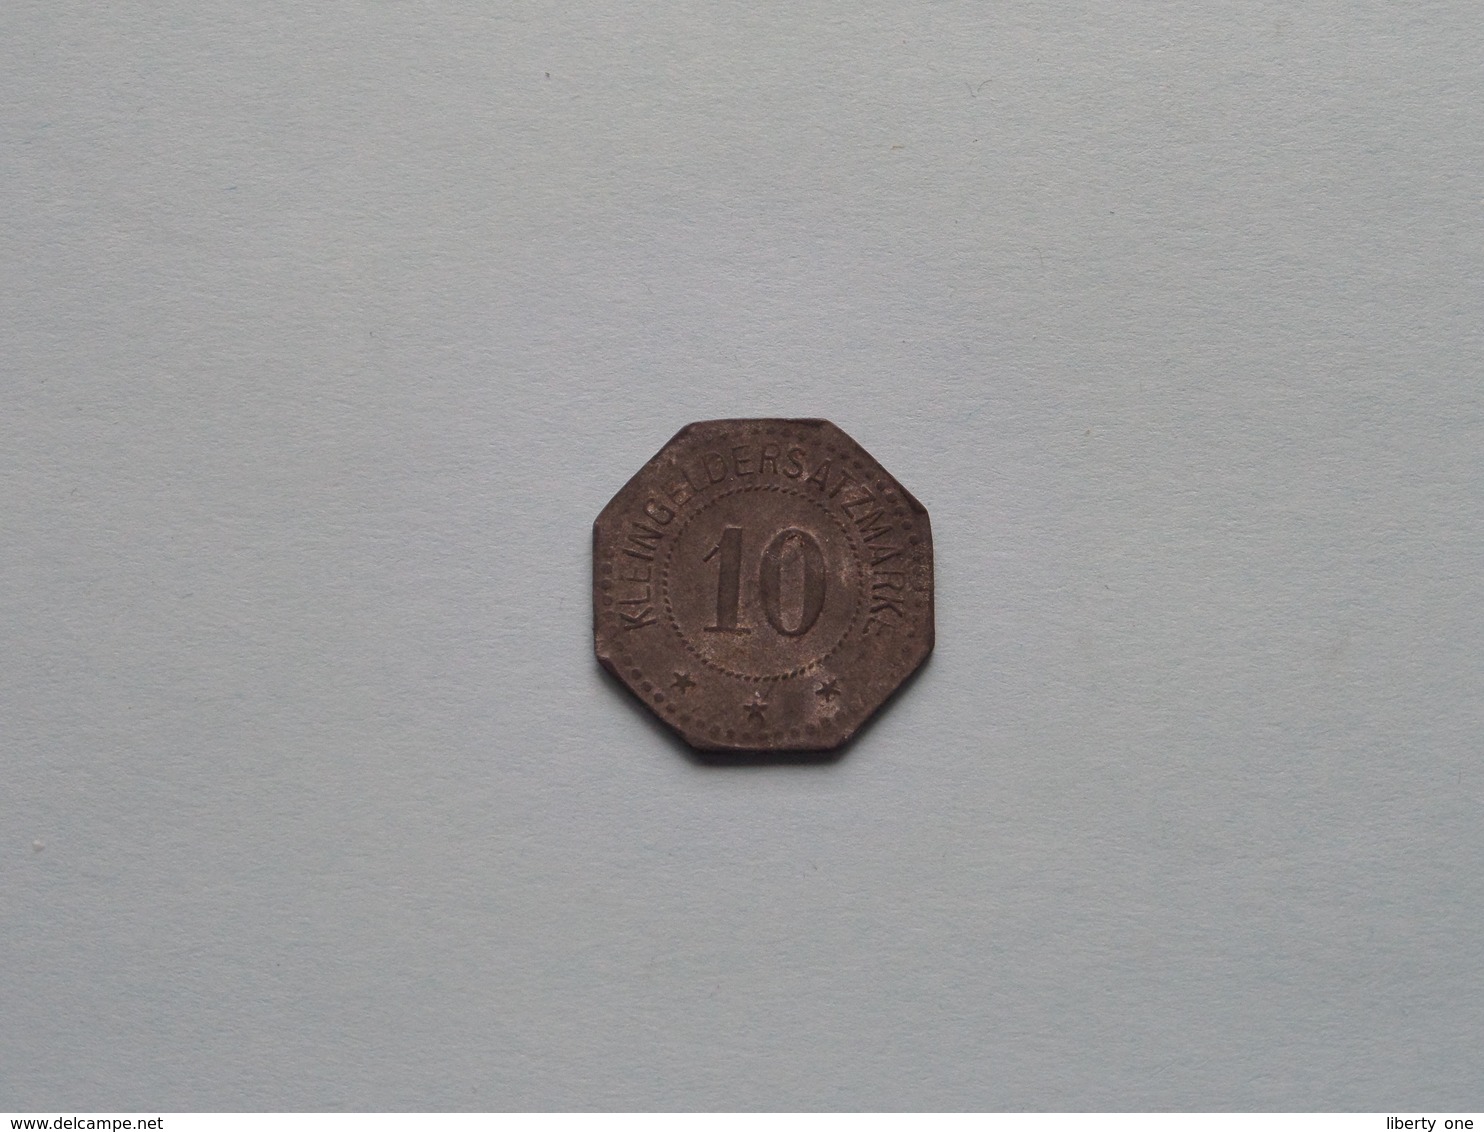 Kredit-Verein Zu ELMSHORN ( 10 Pf. ) Kleingeldersatzmarke ( For Grade, Please See Photo ) ! - Monetary/Of Necessity